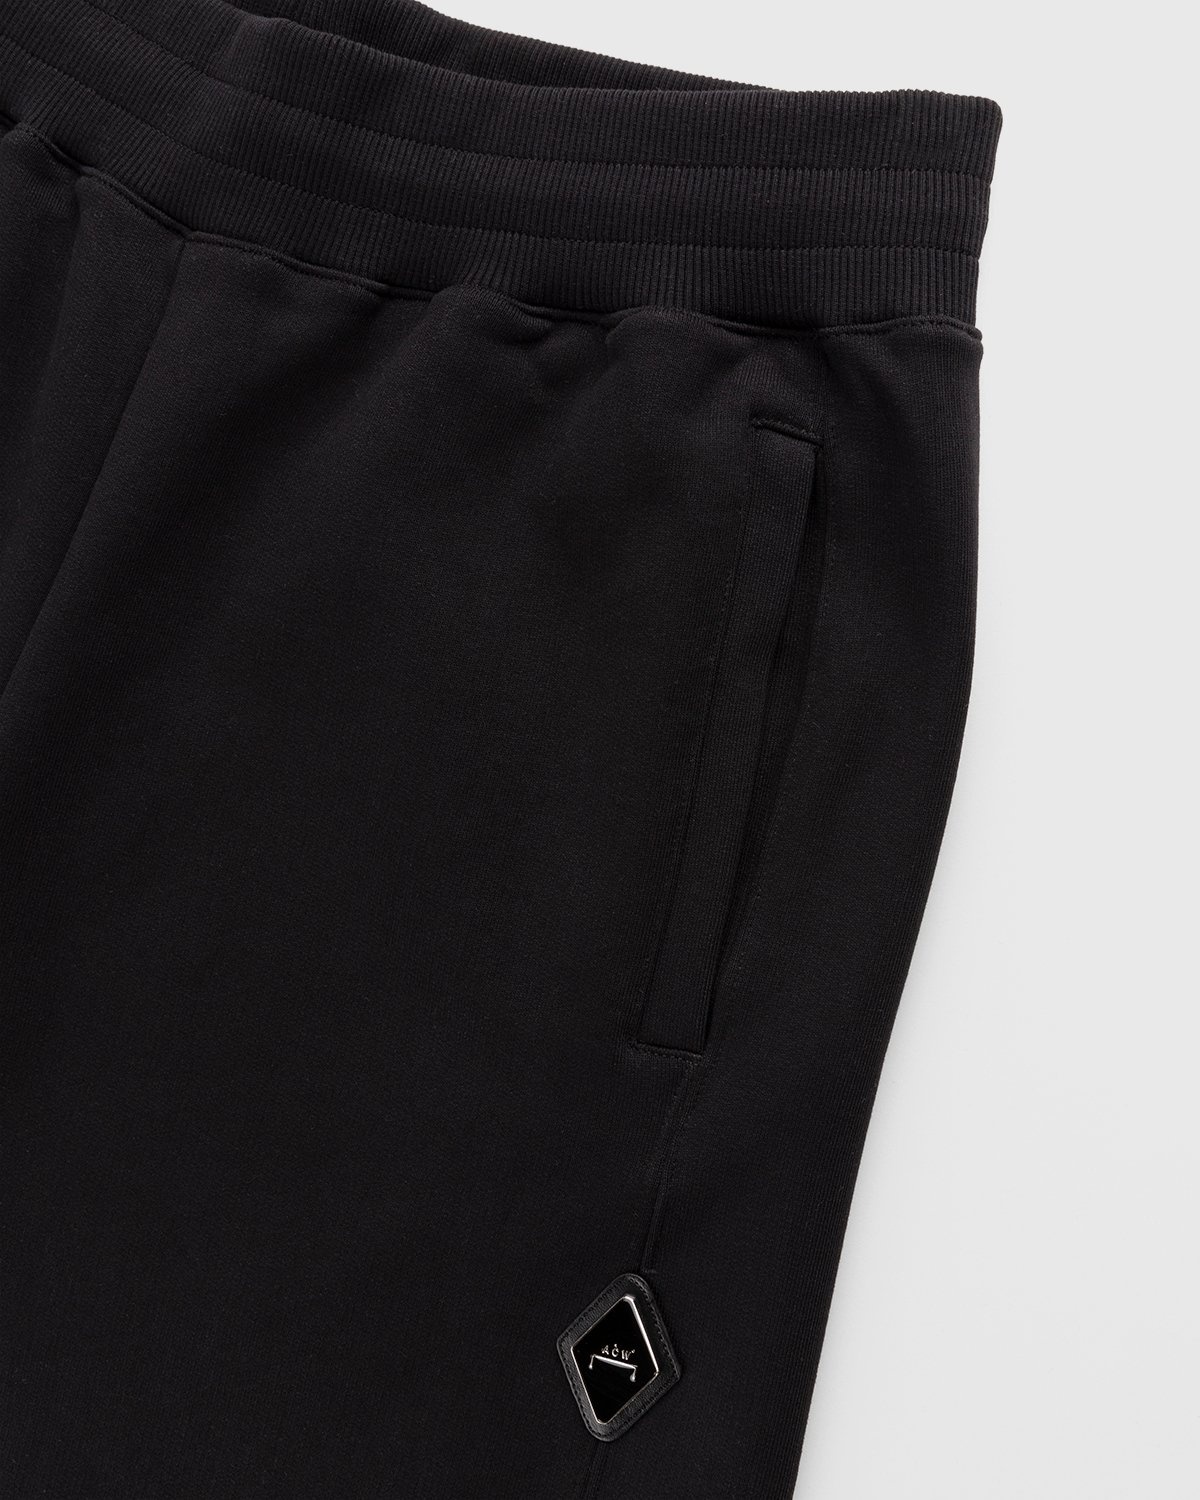 A-Cold-Wall* – Vault Shorts Black - Shorts - Black - Image 4